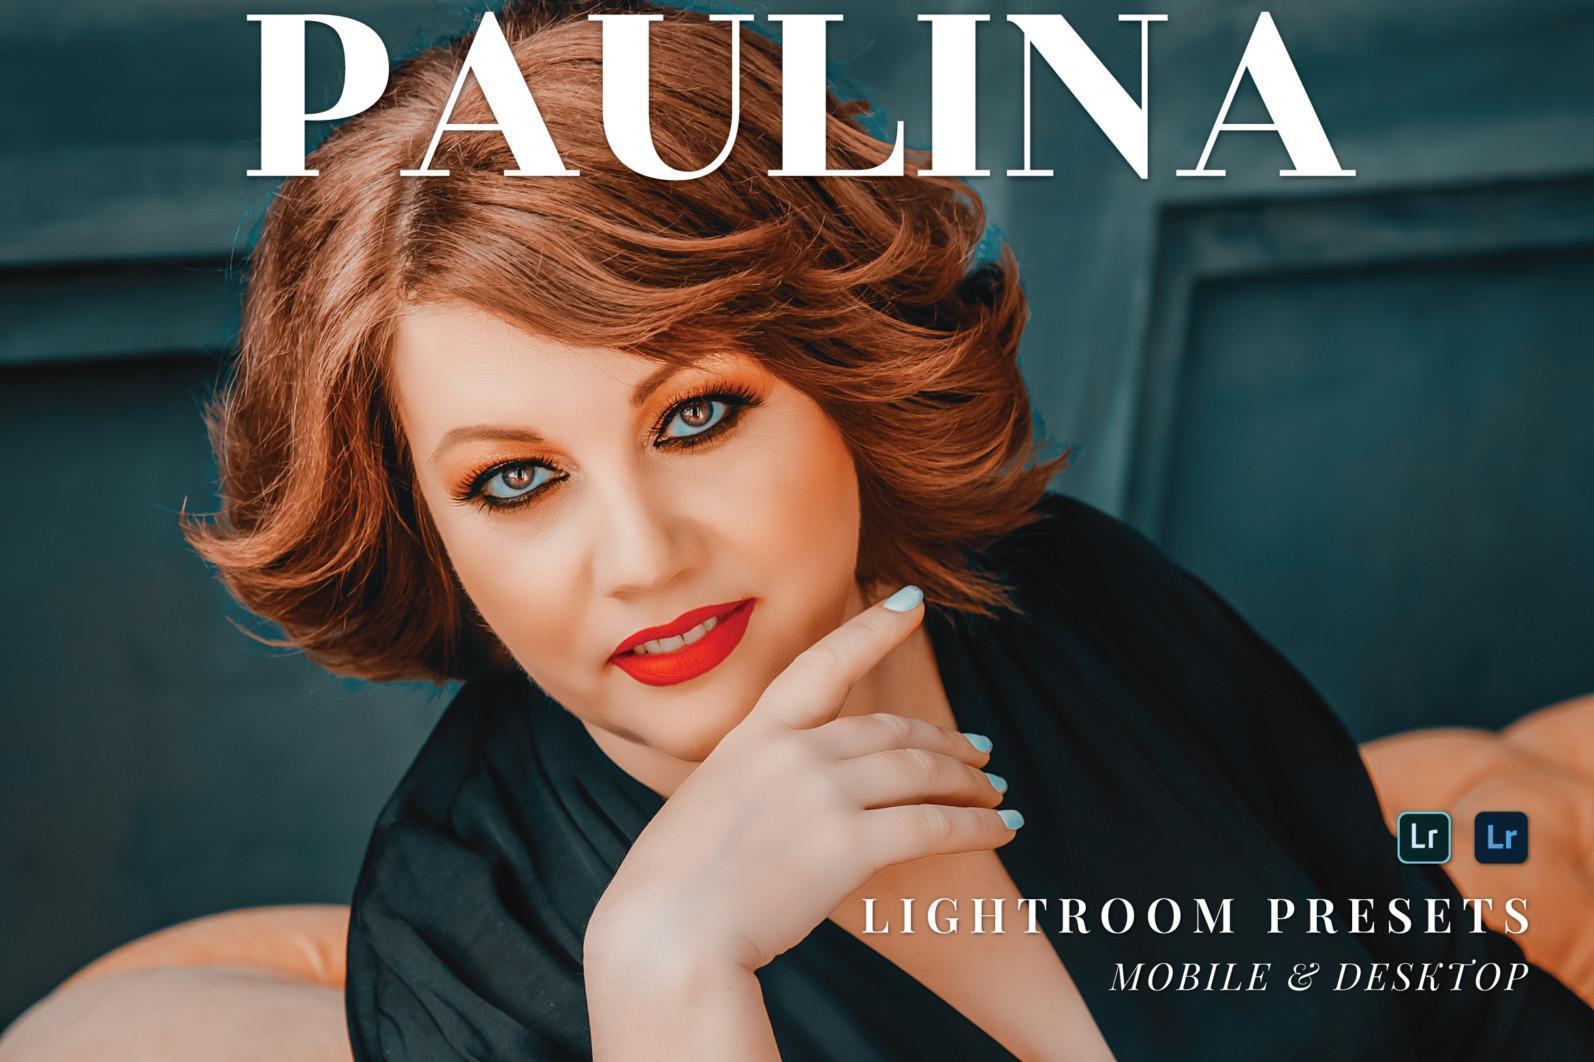 10 Paulina Lightroom Mobile and Desktop Presets | Works with Free Lightroom Mobile App - 1 598 -